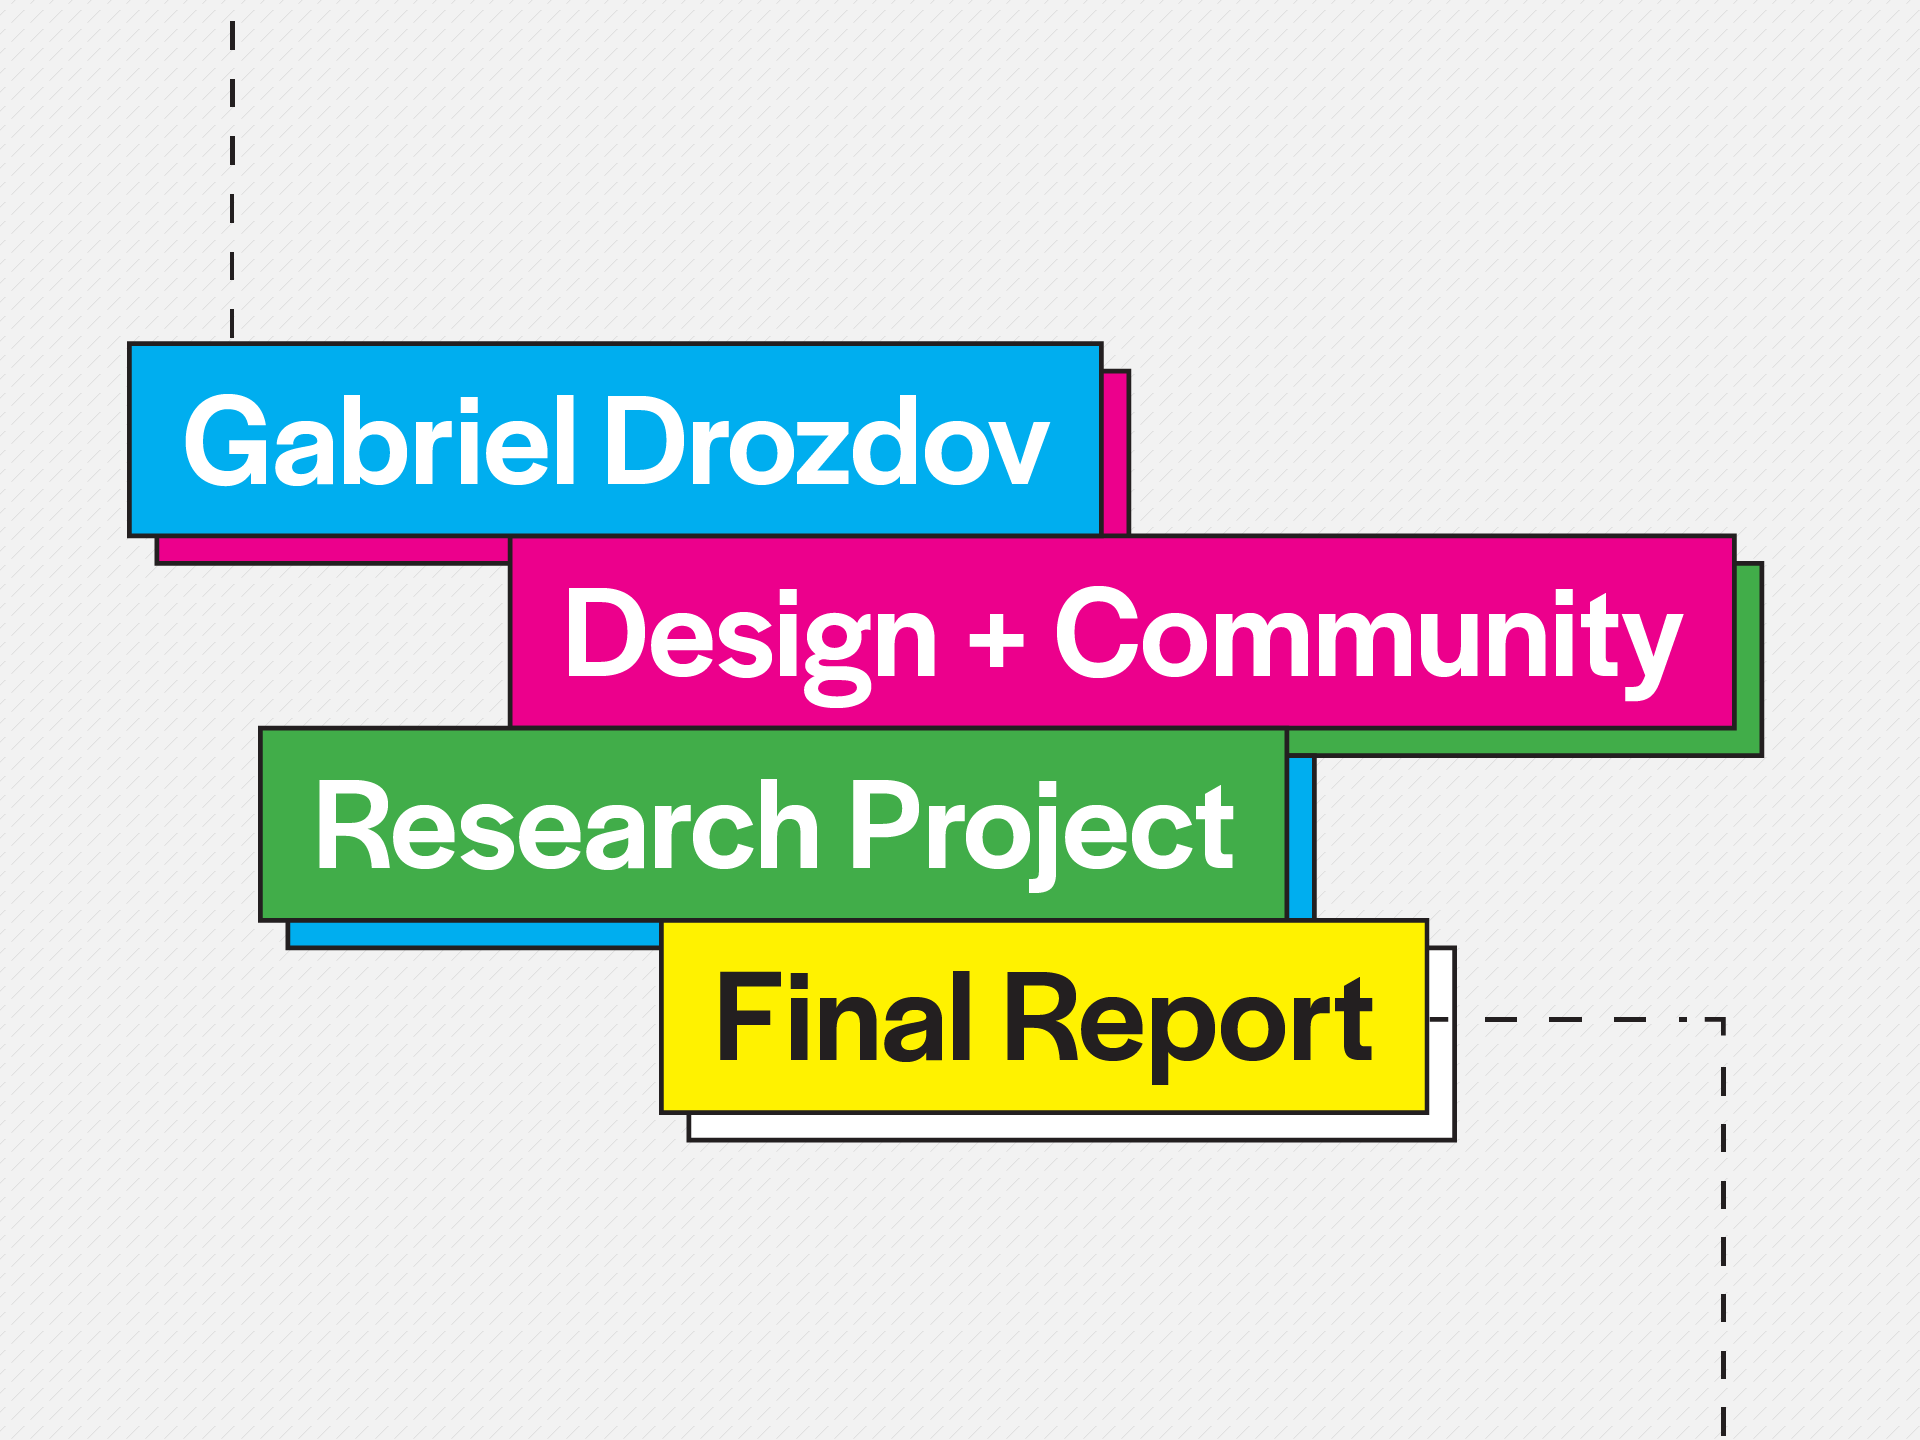 Design + Community Prototype